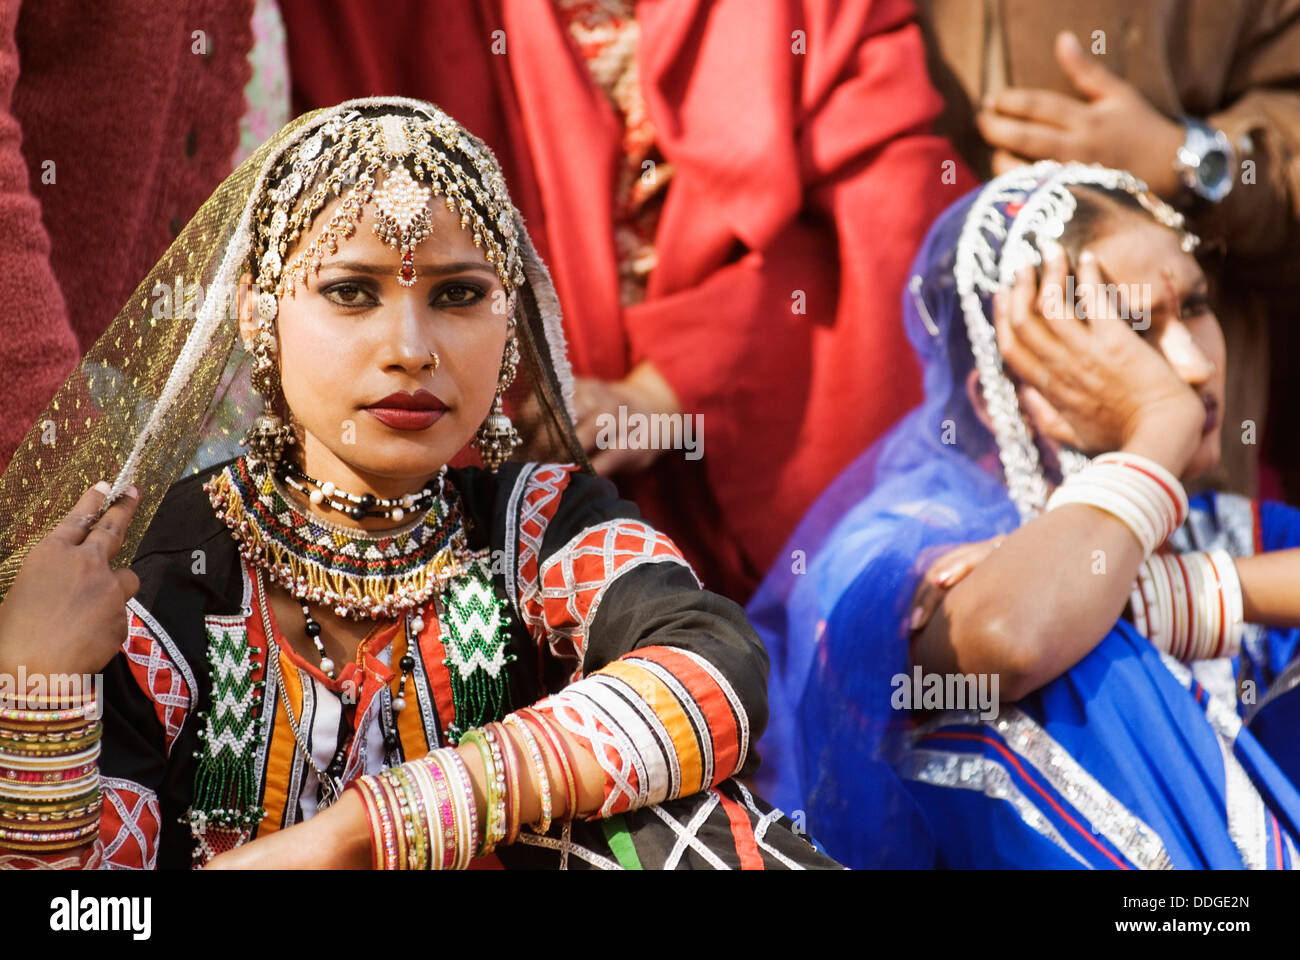 Woman in traditional Rajasthani dress at Surajkund Mela, Faridabad, Haryana, India Stock Photo